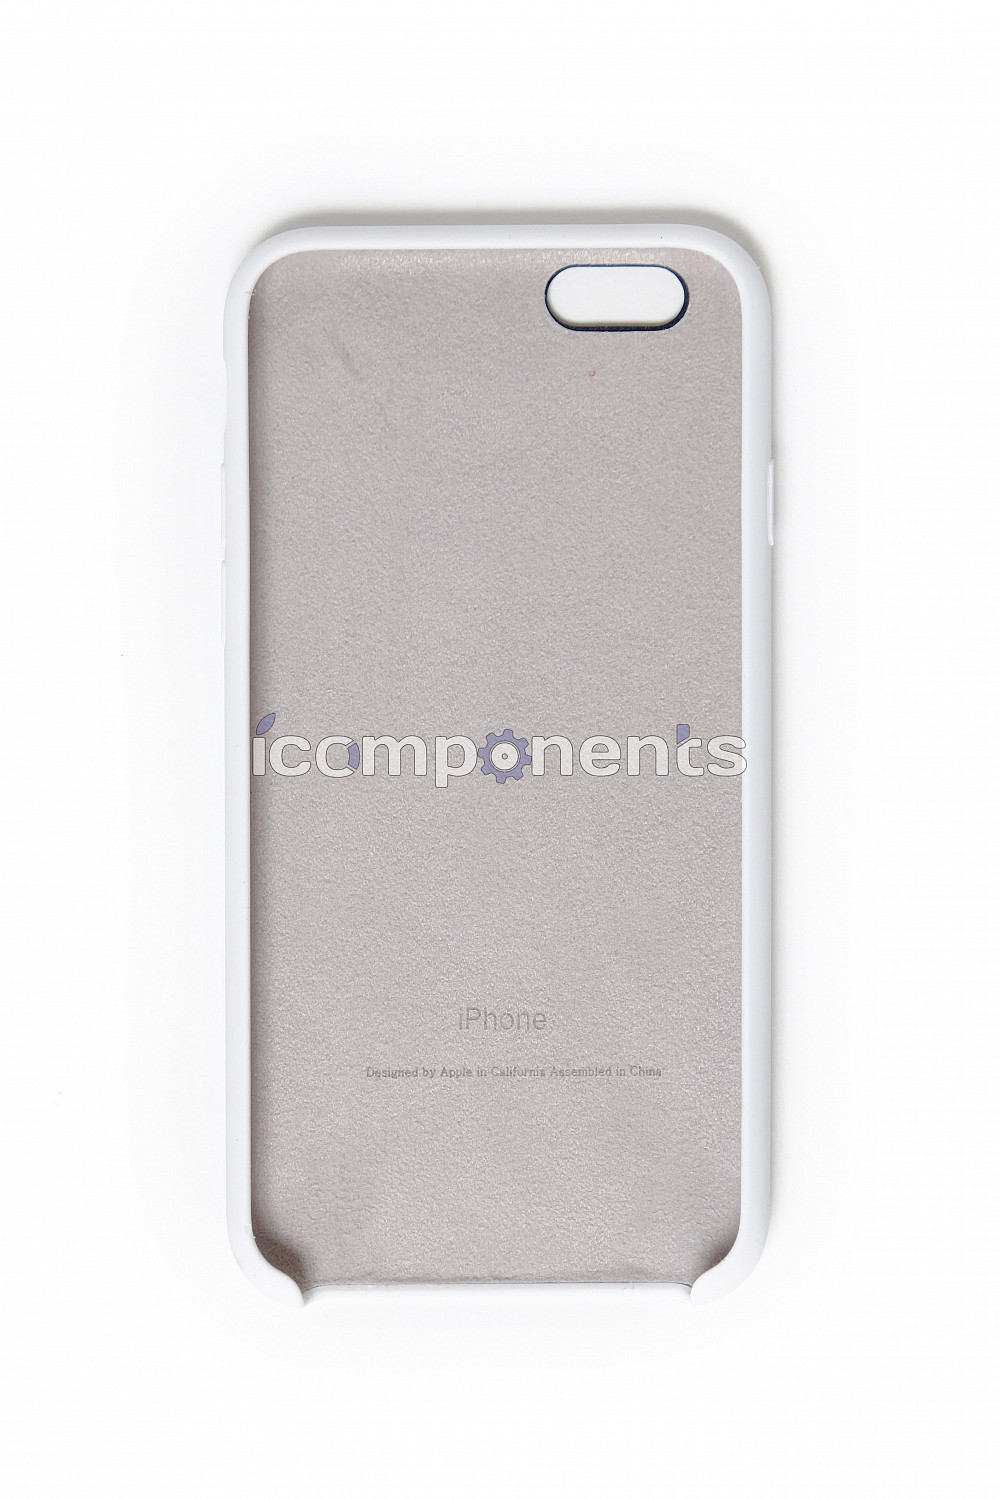 картинка Силиконовый чехол для iPhone 6/6s, white (белый) от магазина Компания+